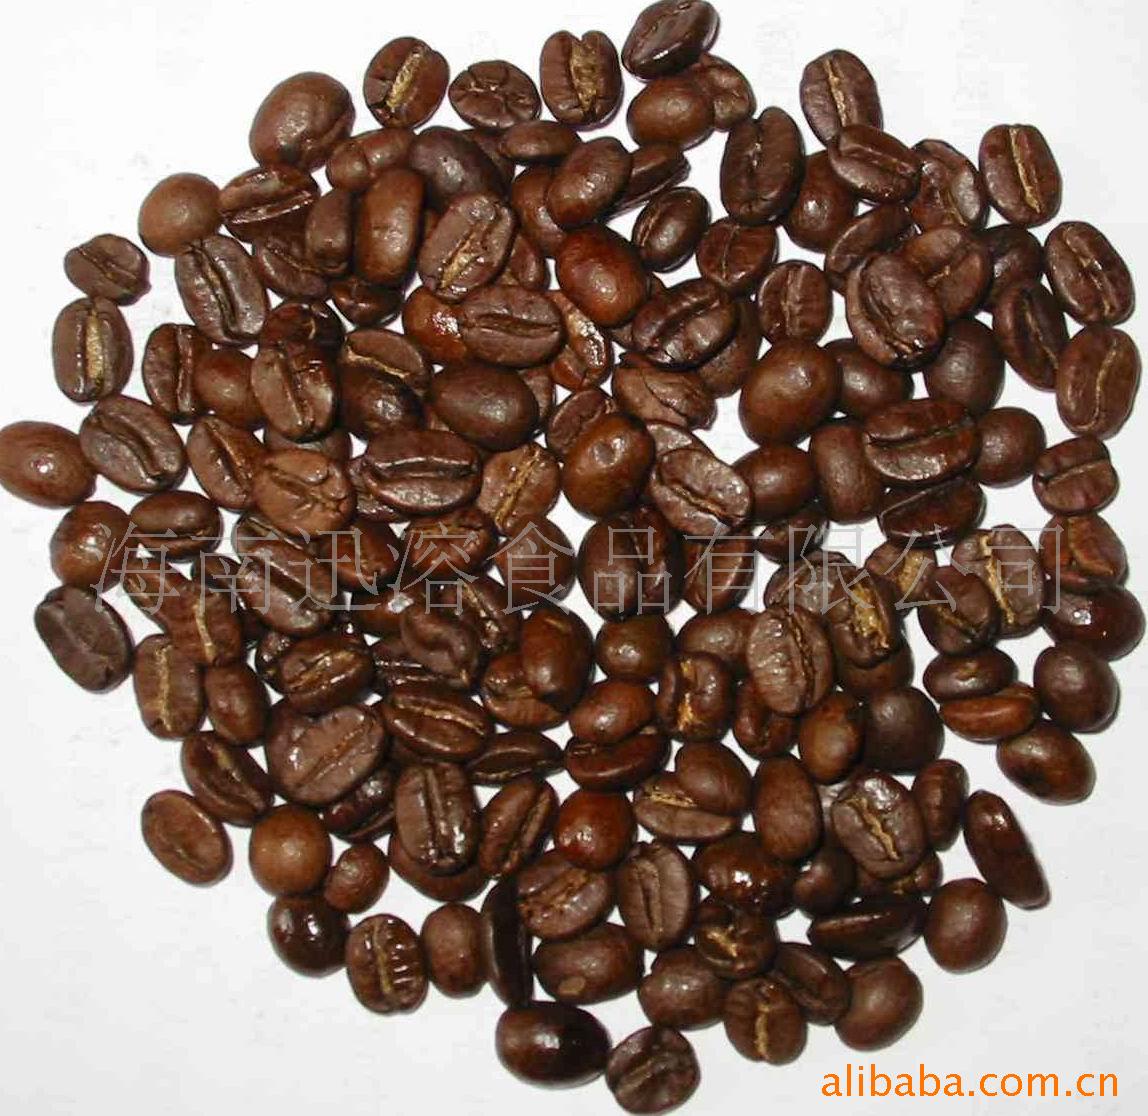 1木炭烘焙巴西咖啡豆(图)信息